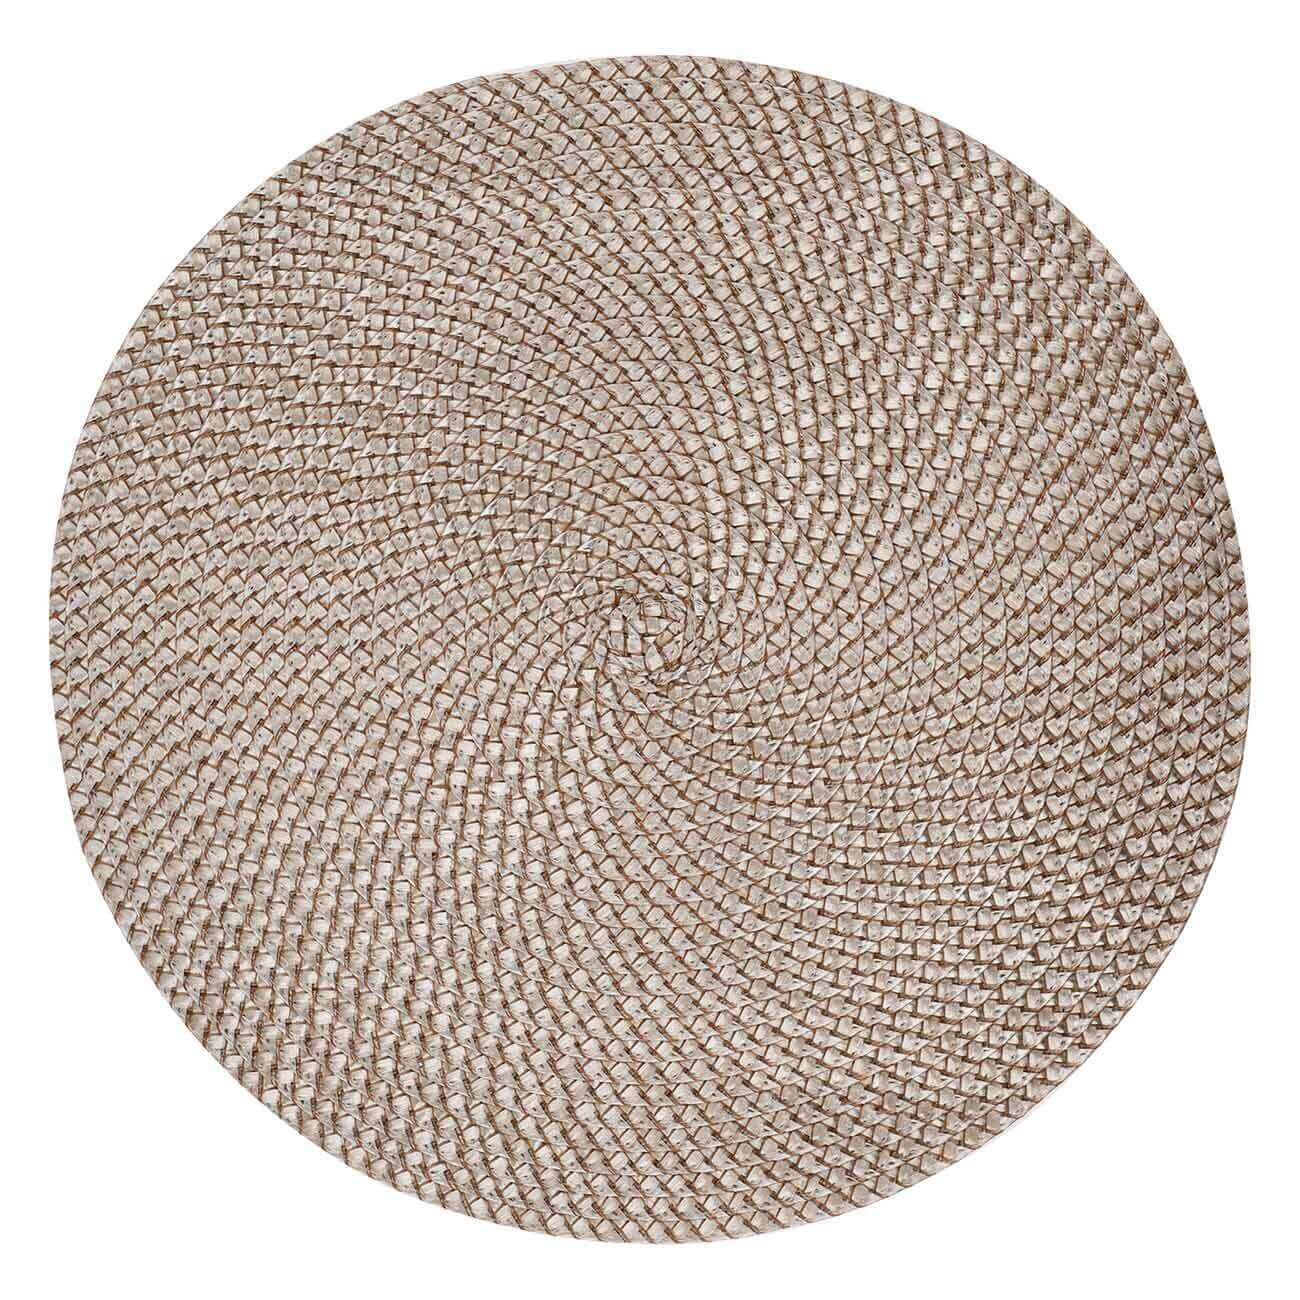 Салфетка под приборы, 38 см, полипропилен/ПЭТ, круглая, песочная, Circle Braid салфетка azur